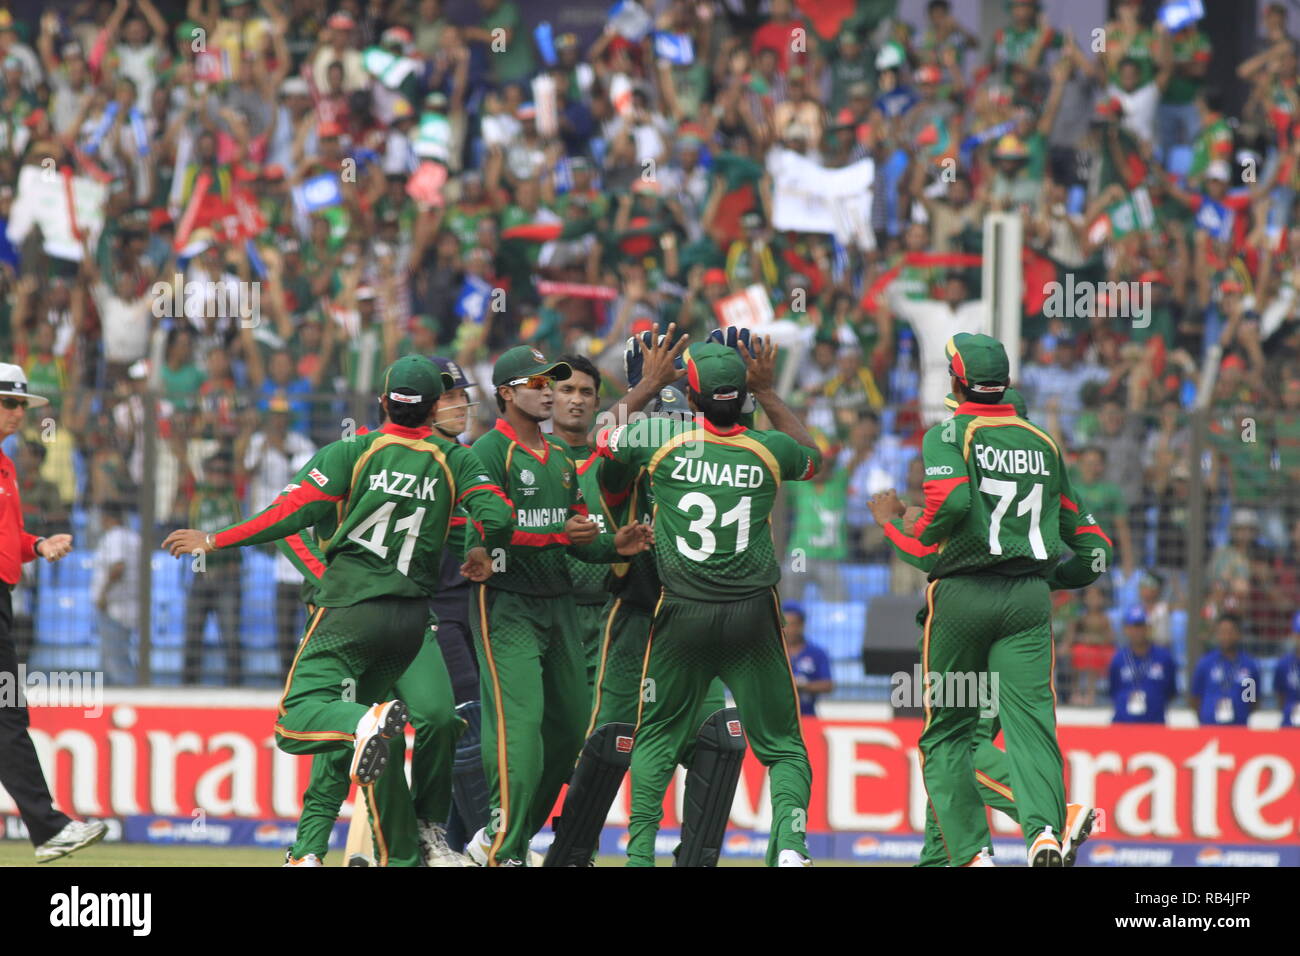 Bangladesh i giocatori e tifosi celebrano il loro emozionante vittoria contro l'Inghilterra in ICC Cricket World Cup 2011 presso Zohur Ahmed Chowdhury Stadium. Chittago Foto Stock